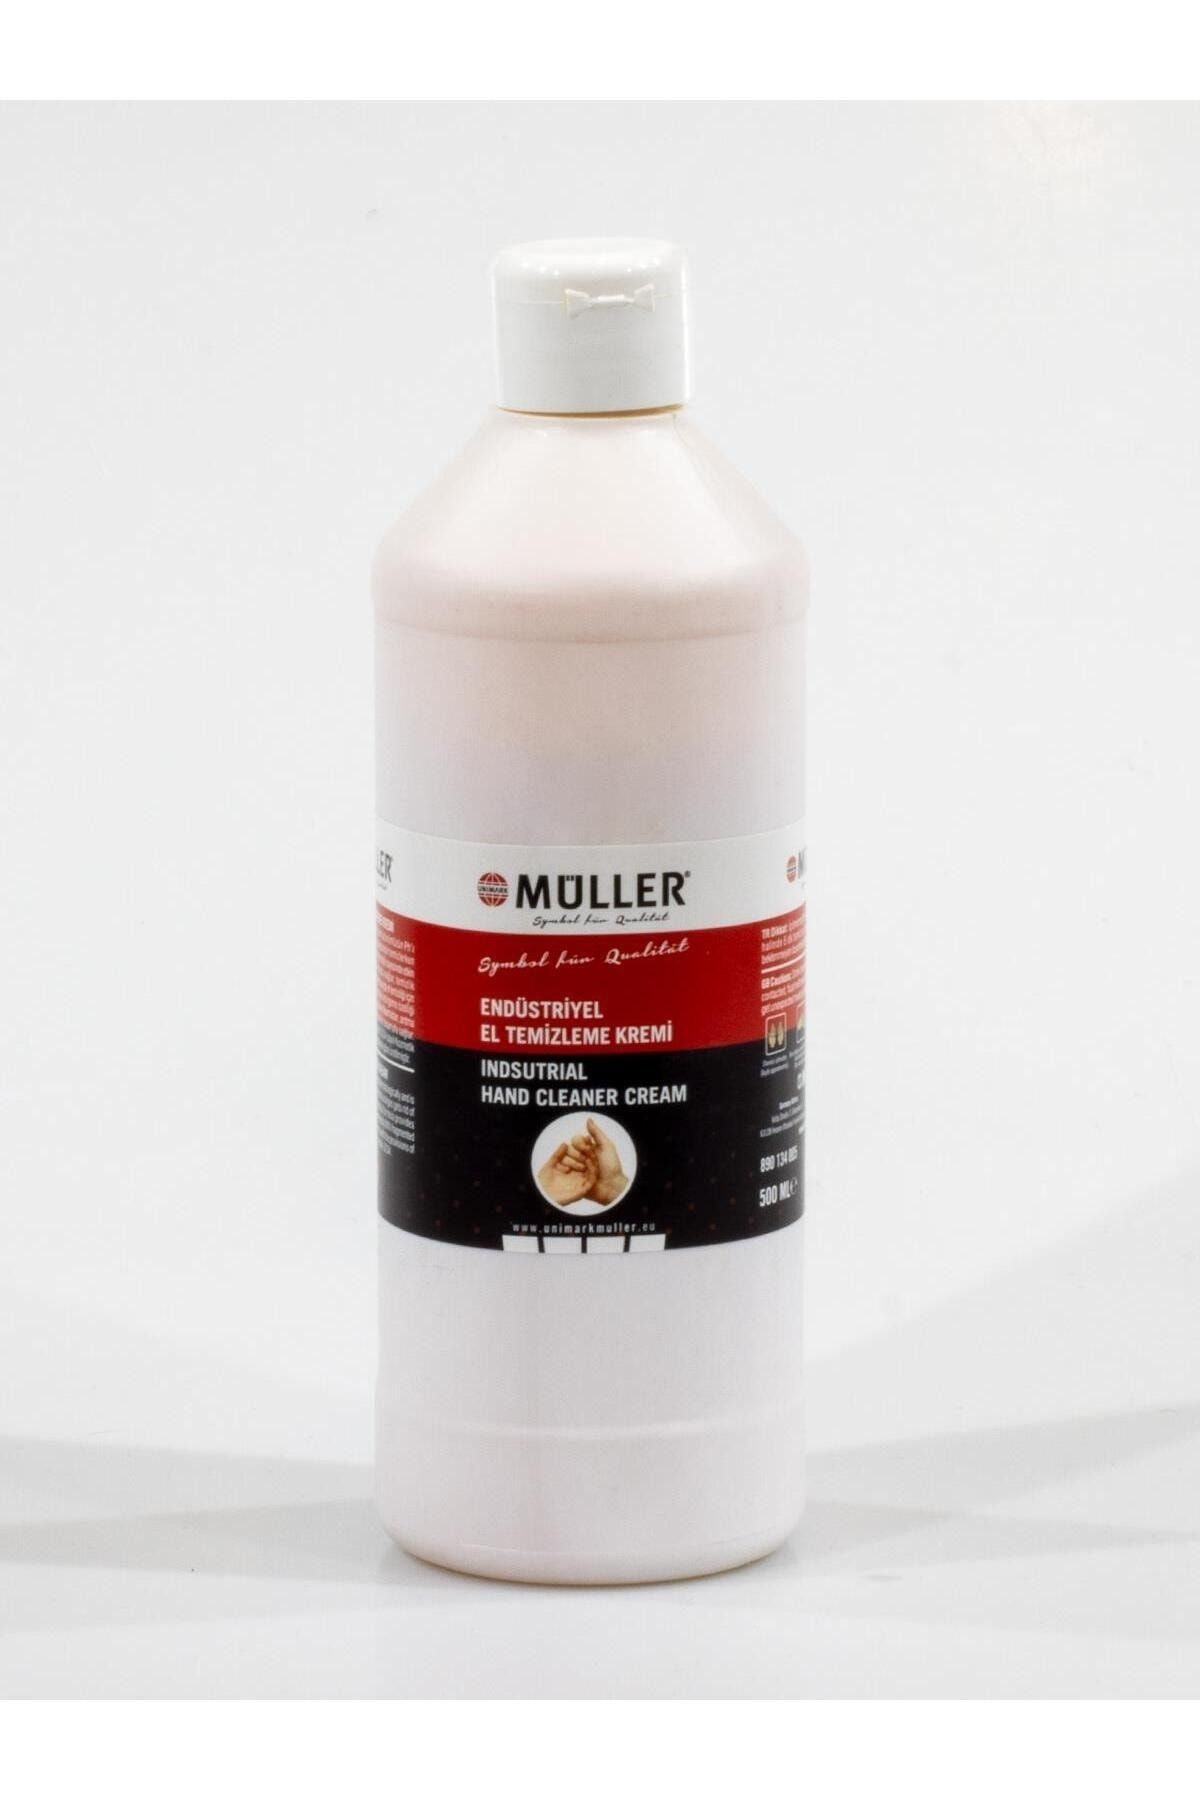 Müller Endüstriyel El Temizleme Kremi (ÜSTÜN ALMAN KALİTESİ) Orjinal Ürün 0.5 Kg